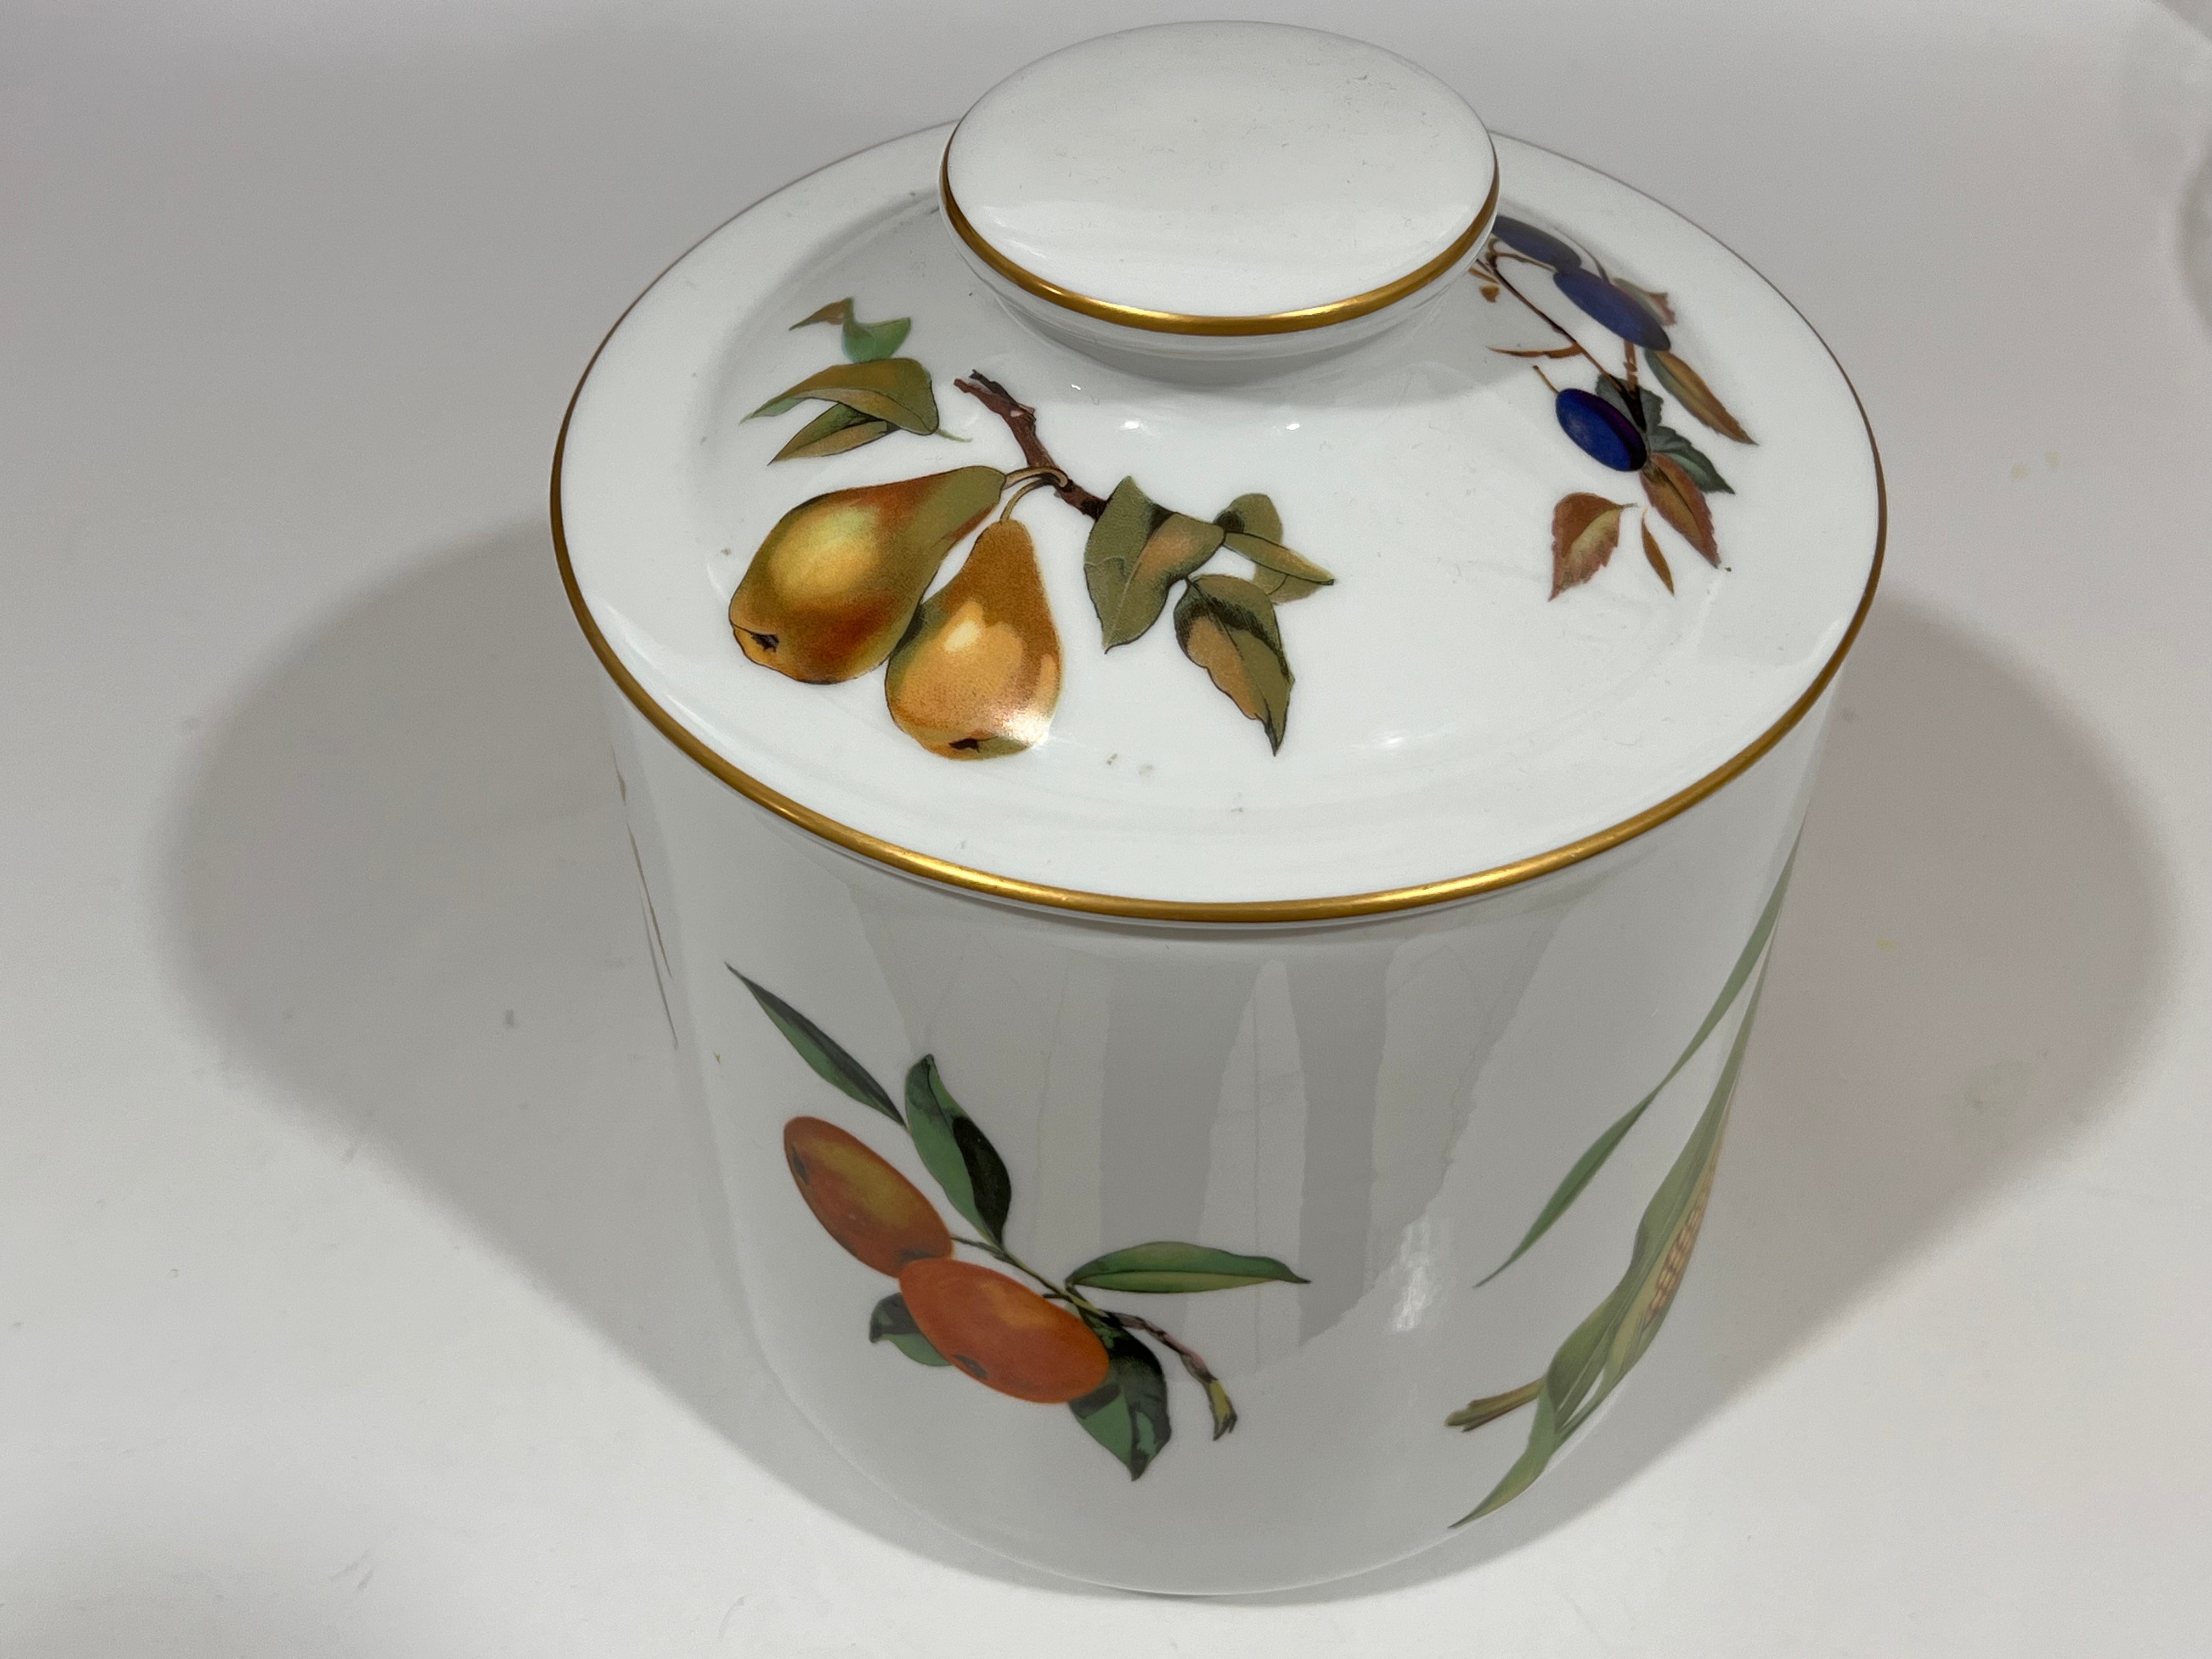 Royal Worcester Evesham Original Porcelain Fine China - Big Cookie Jar - Gold Trim - From England